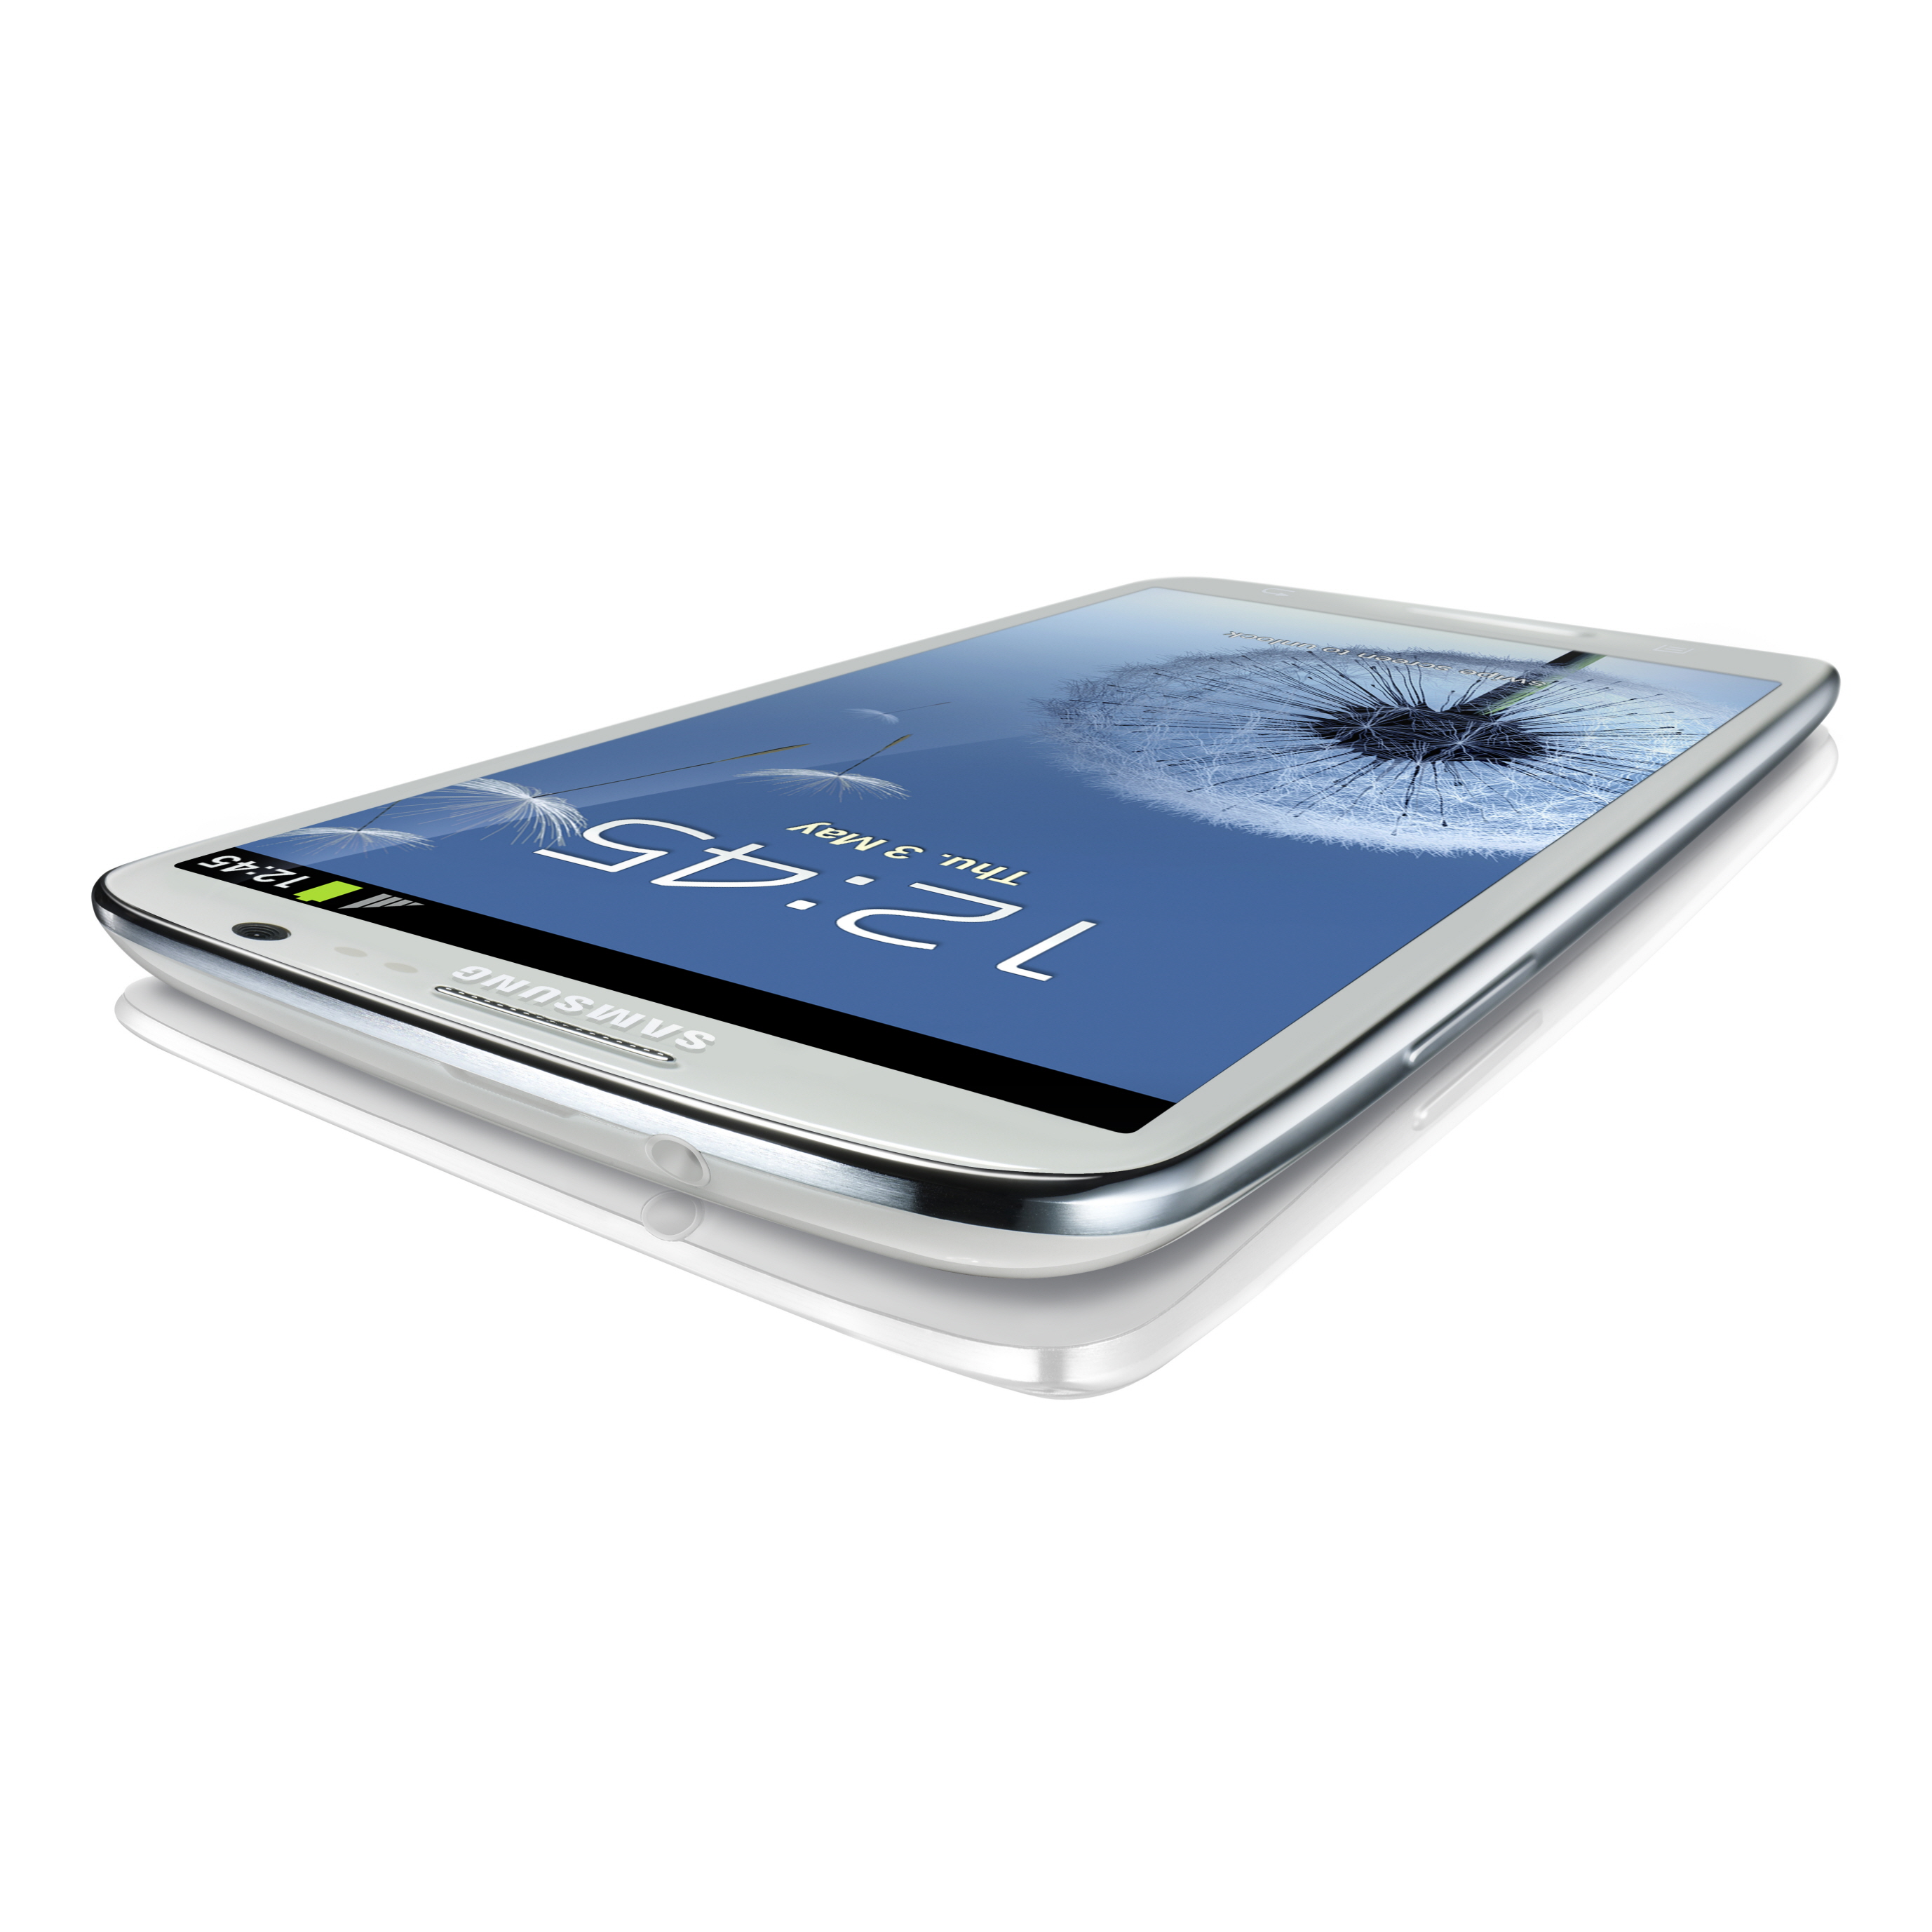 Immagine pubblicata in relazione al seguente contenuto: Samsung Electronics annuncia lo smartphone GALAXY S III | Nome immagine: news17157_5.jpg